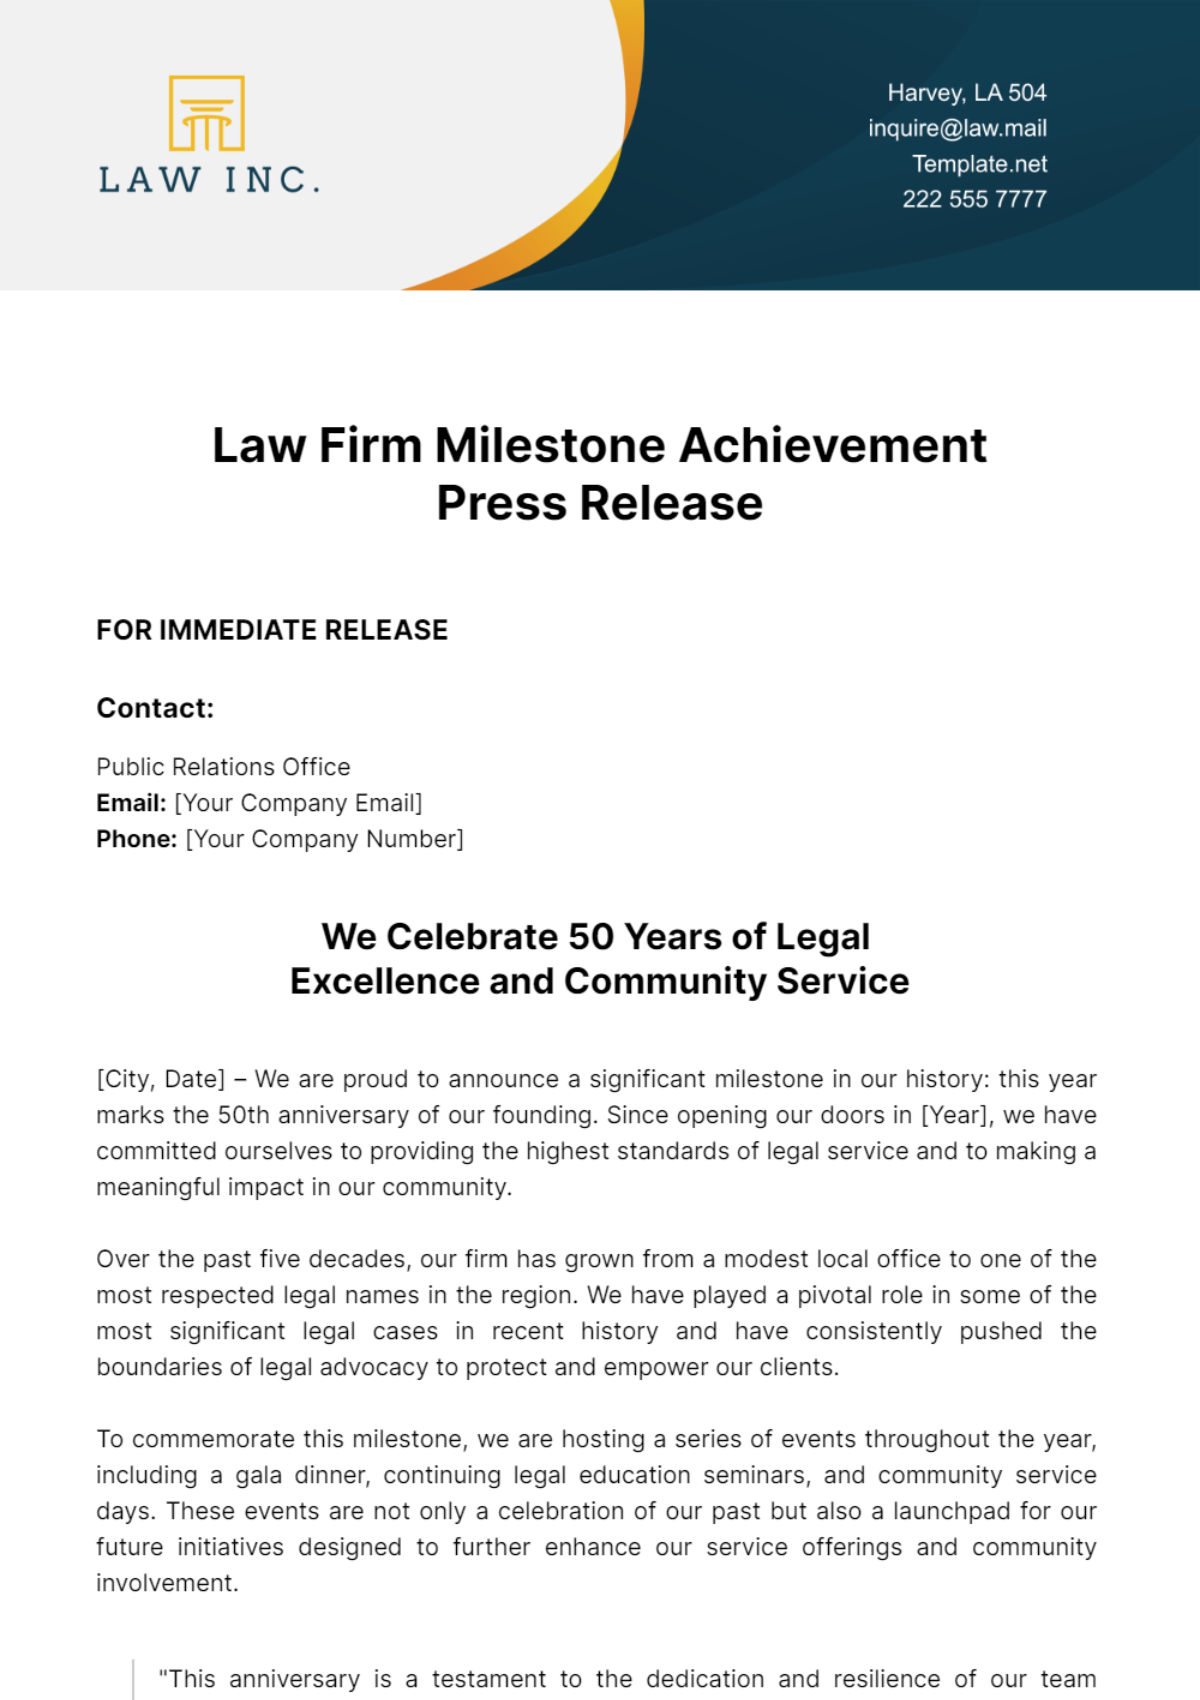 Law Firm Milestone Achievement Press Release Template